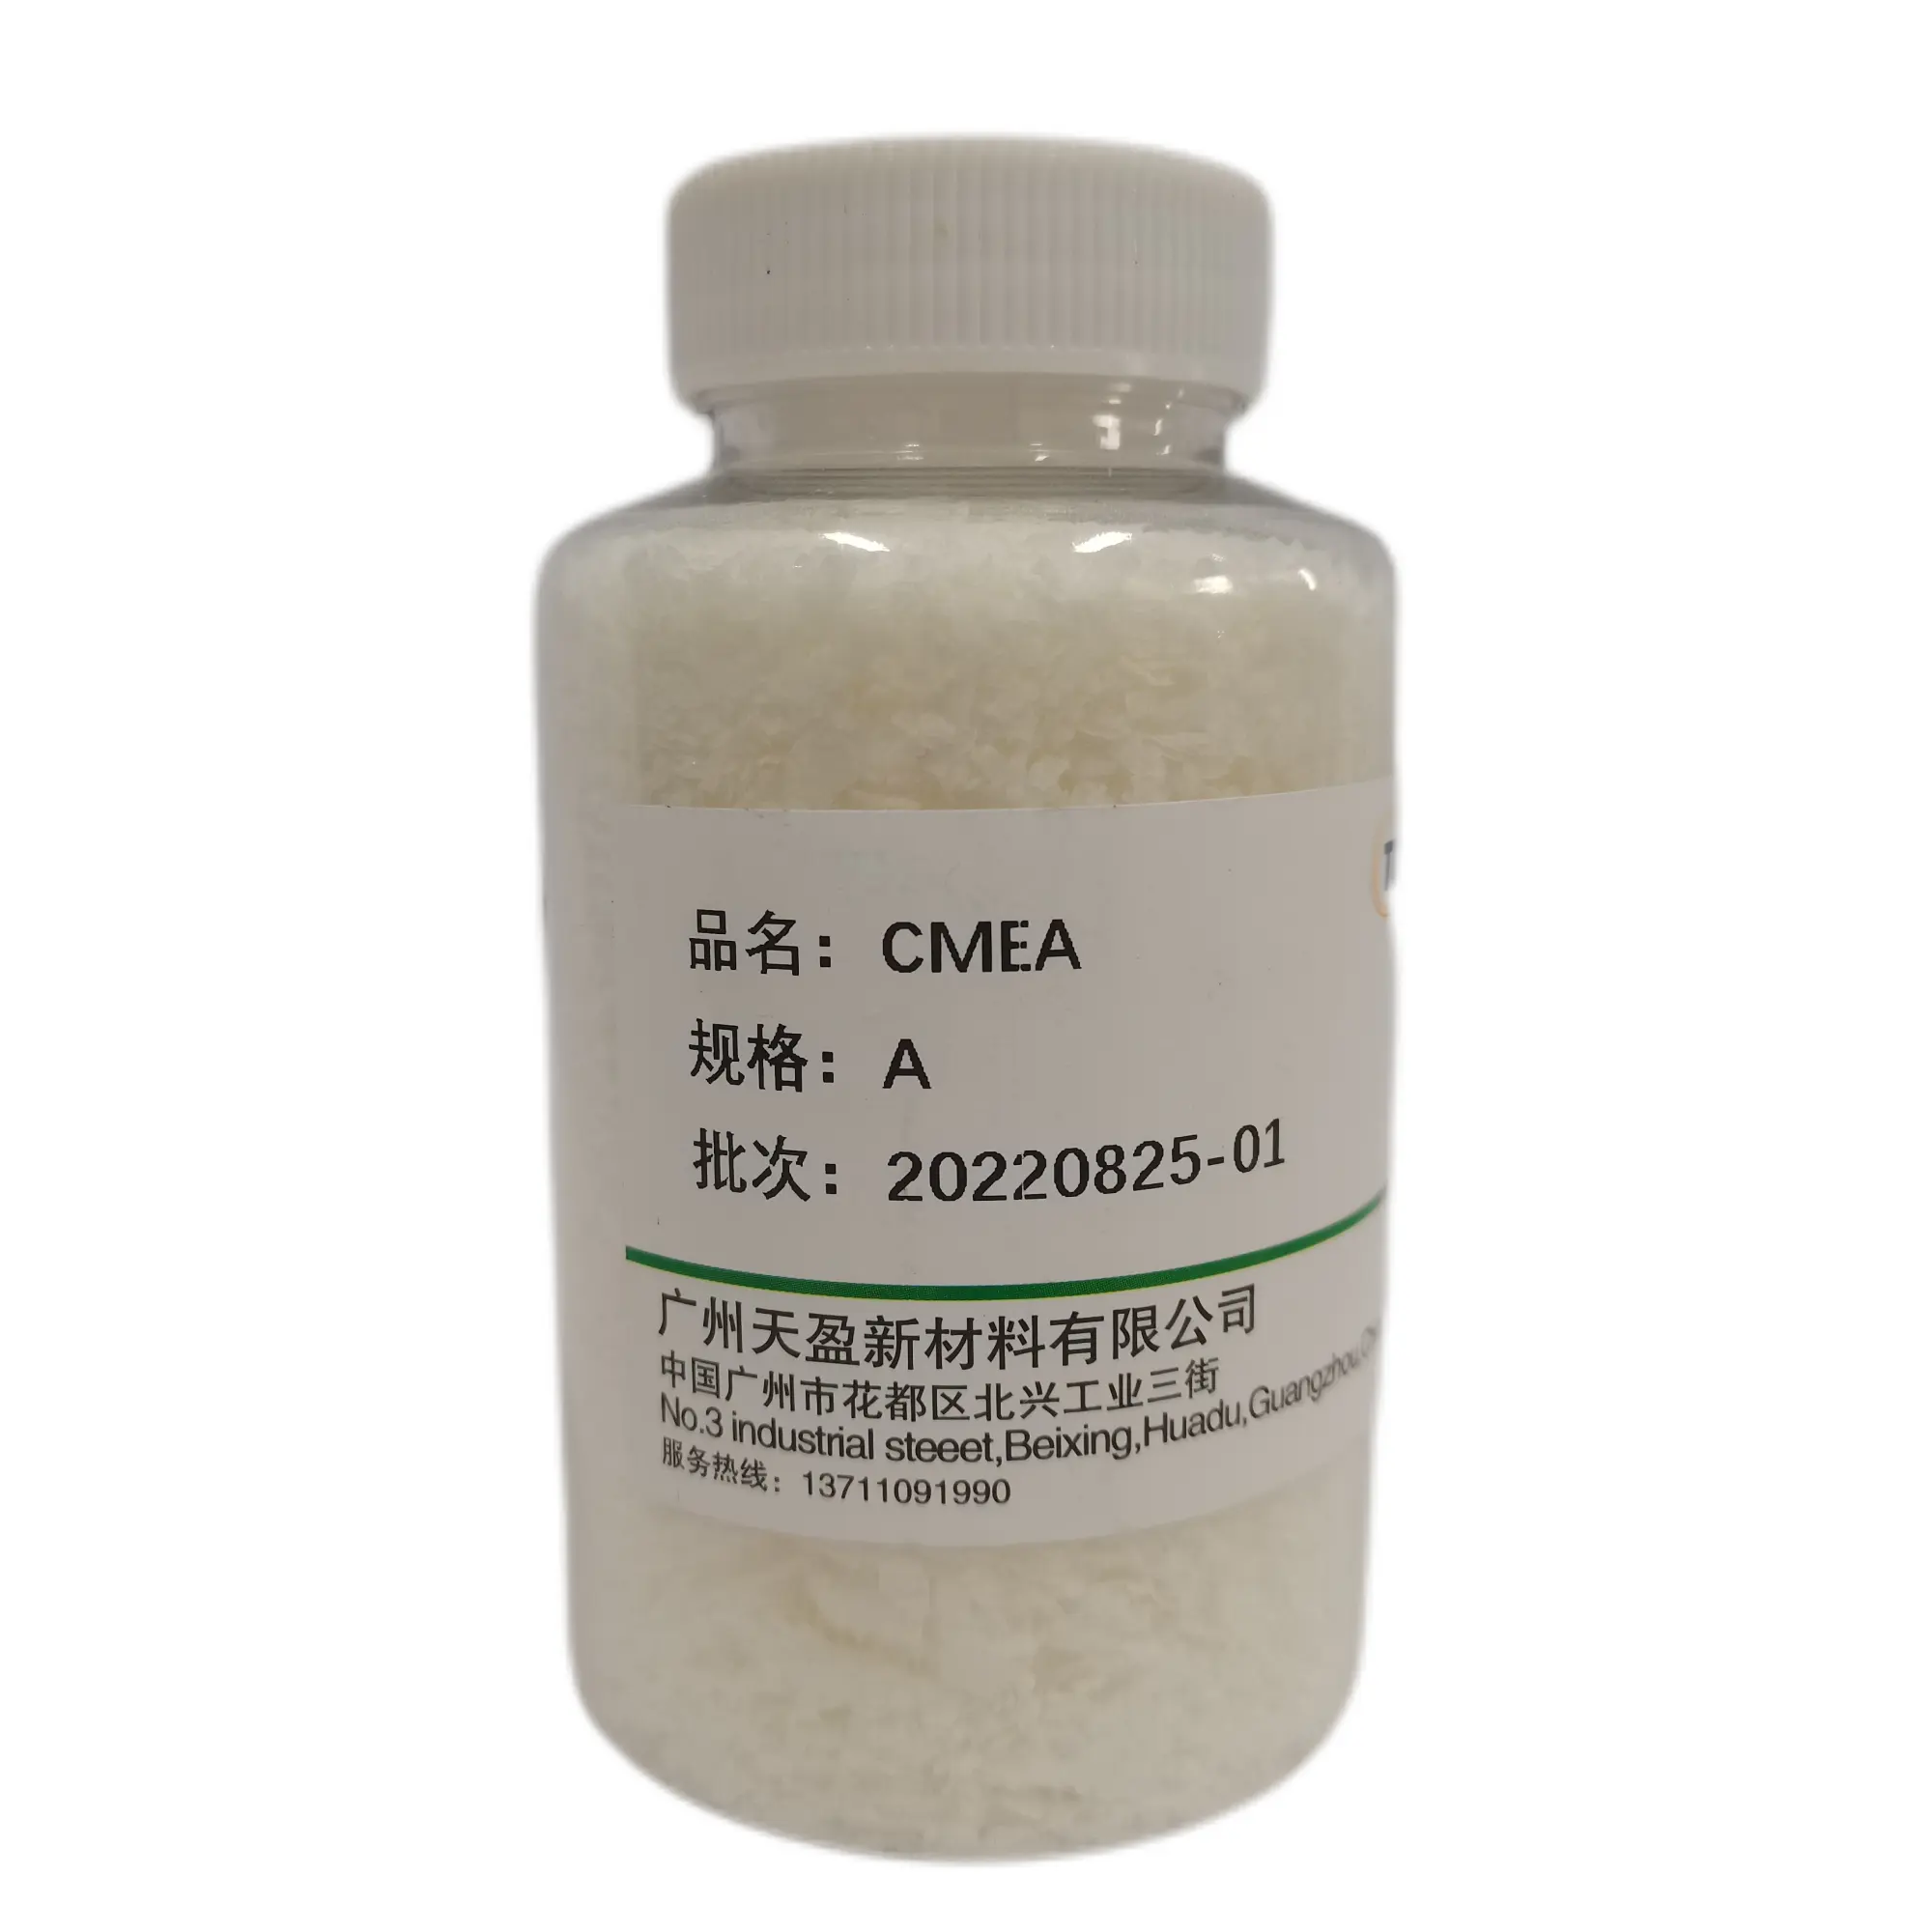 Моющее средство, утолщающее вещество, пенообразующее вещество CMEA Cocamide моноэтаноламин Cocamide MEA CAS 68140-00-1 для шампуня, геля для душа